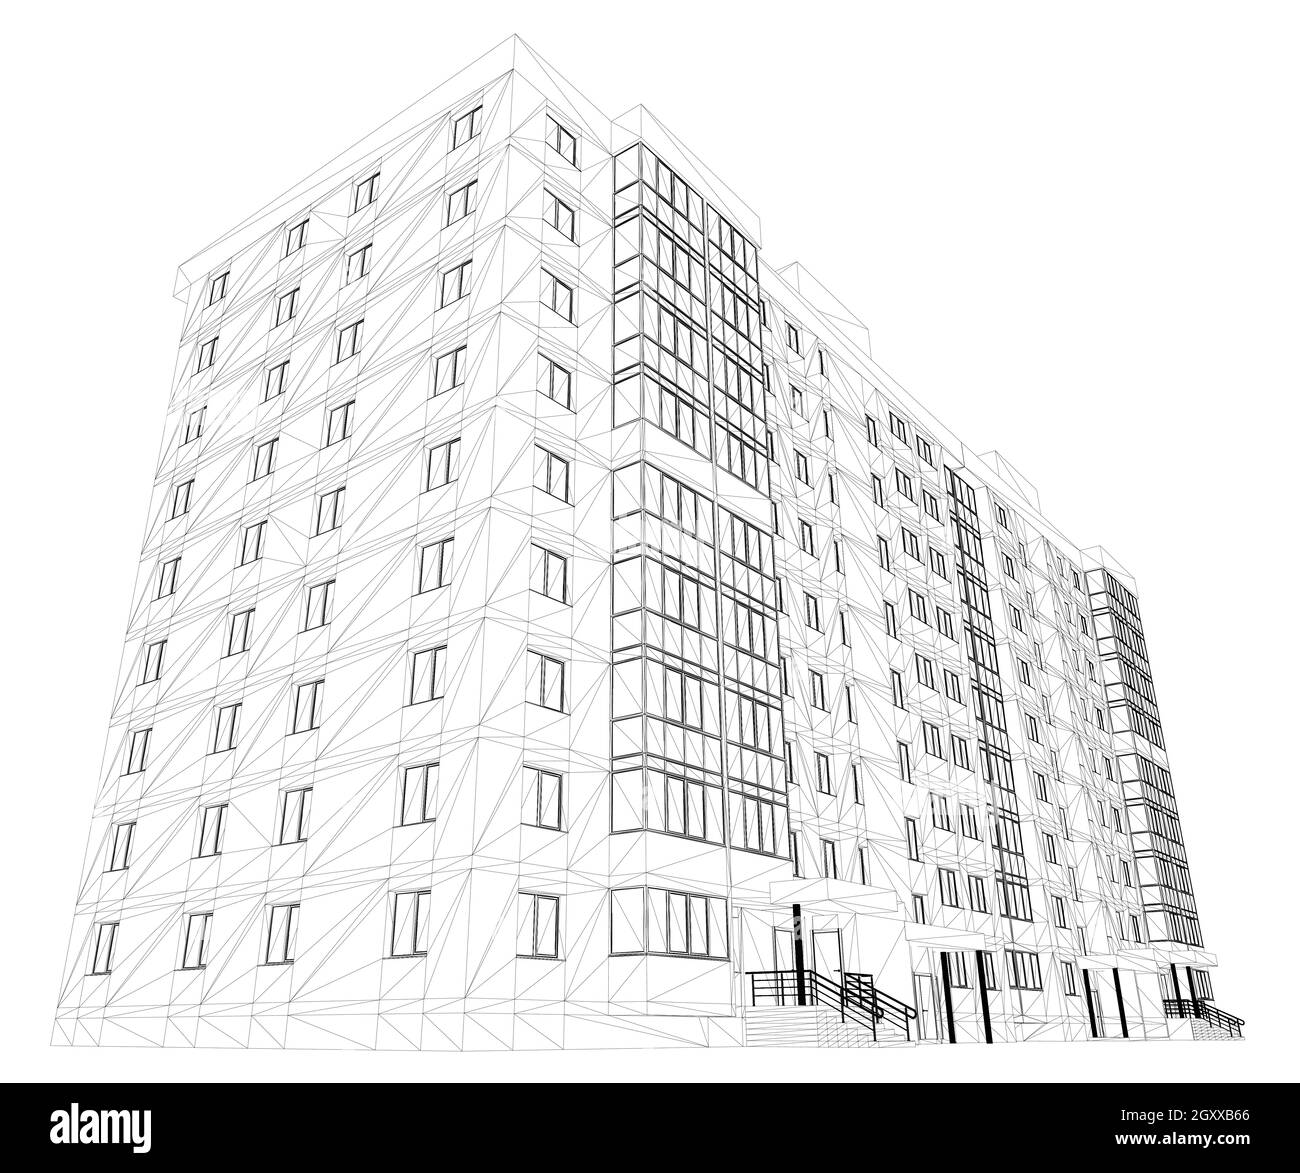 Drahtmodell eines neunstöckigen Hauses aus schwarzen Linien, isoliert auf weißem Hintergrund. Ansicht von unten. 3D. Vektorgrafik. Stock Vektor